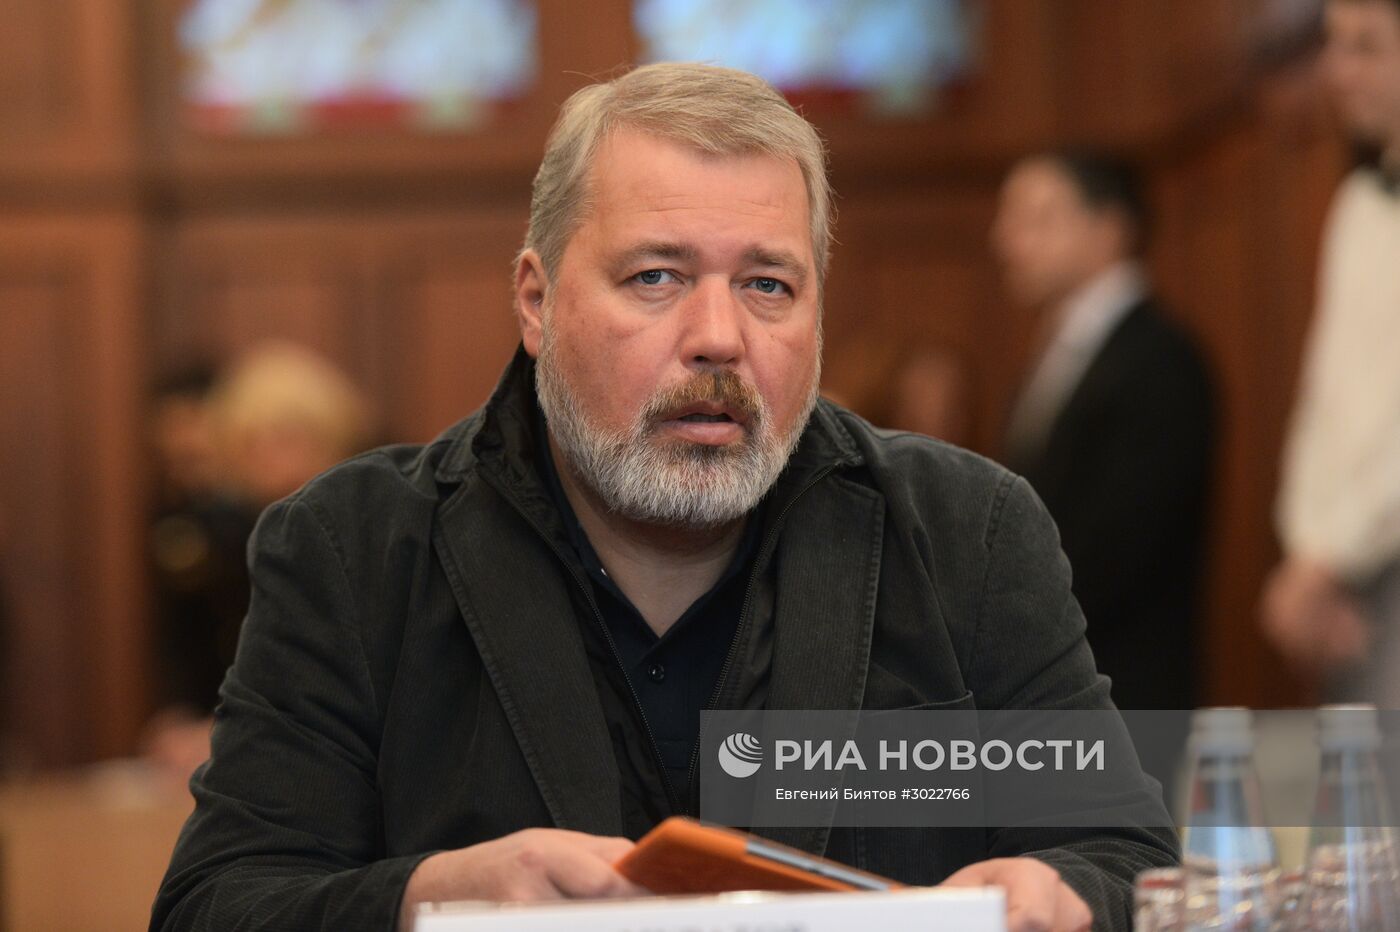 Первое заседание Общественного совета при МВД России третьего созыва